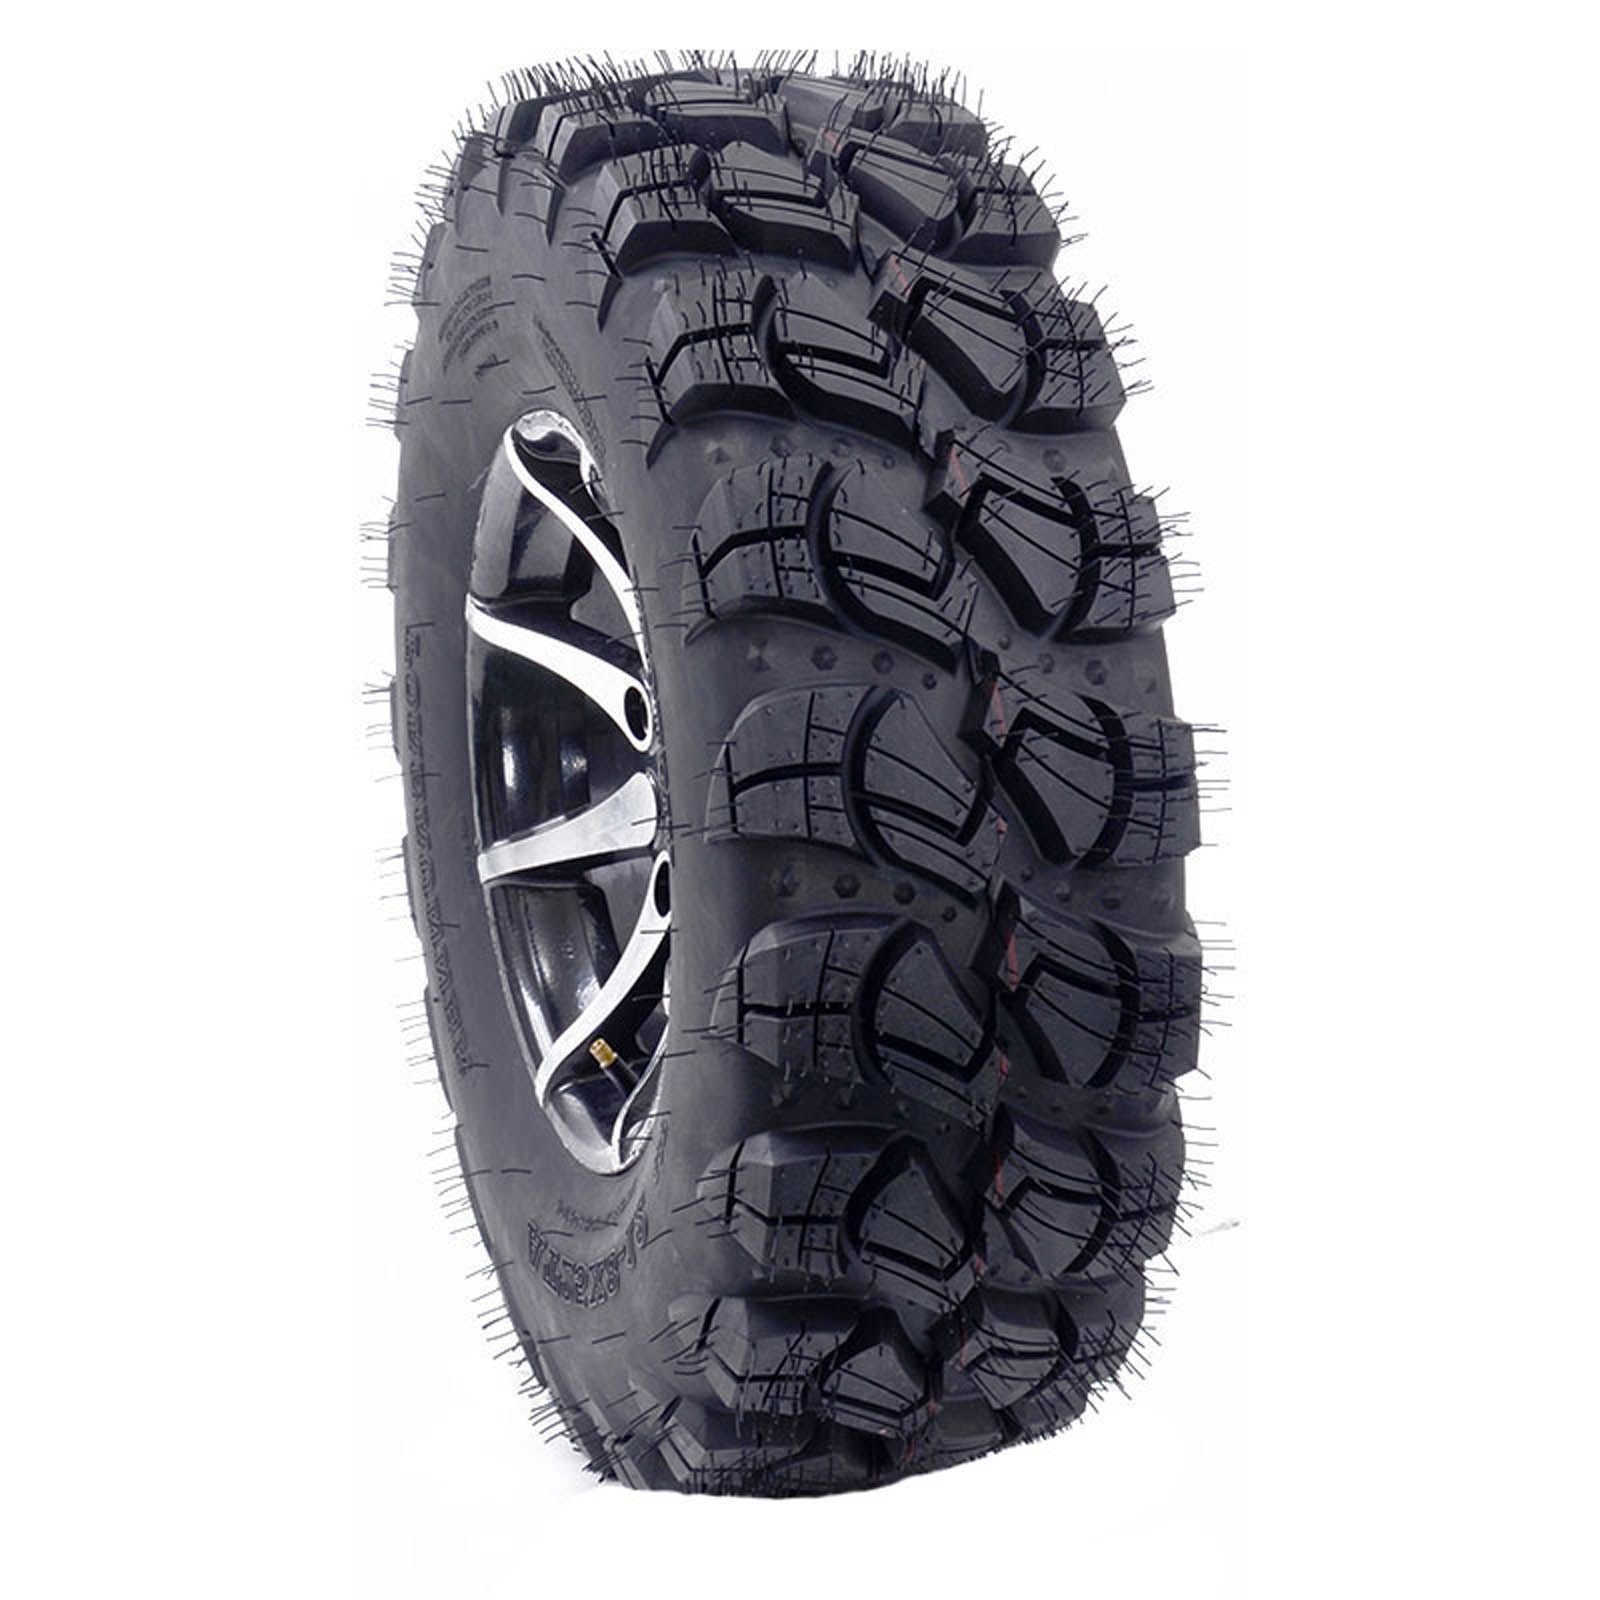 New FOREUNNER Victory ATV Tyre 27x9x14 6pr TL #14X27X9VICTORY